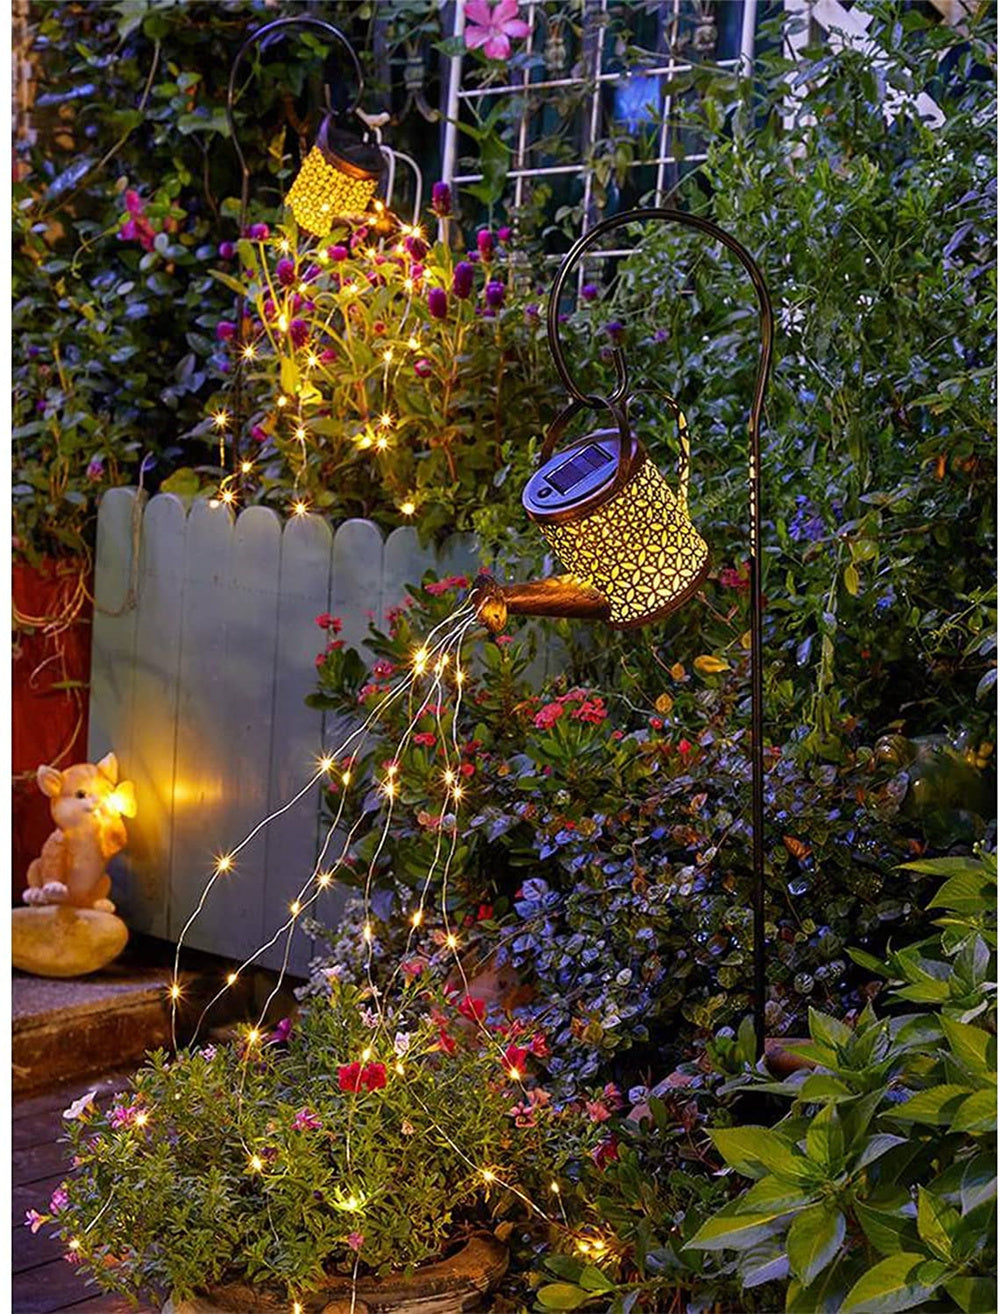 ARROSOIR EN GUIRLANDE SOLAIRE LED - Premium lampe solaire jardin puissante from Ma-déco-Jardin - Just $29.90! Shop now at Ma deco Jardin